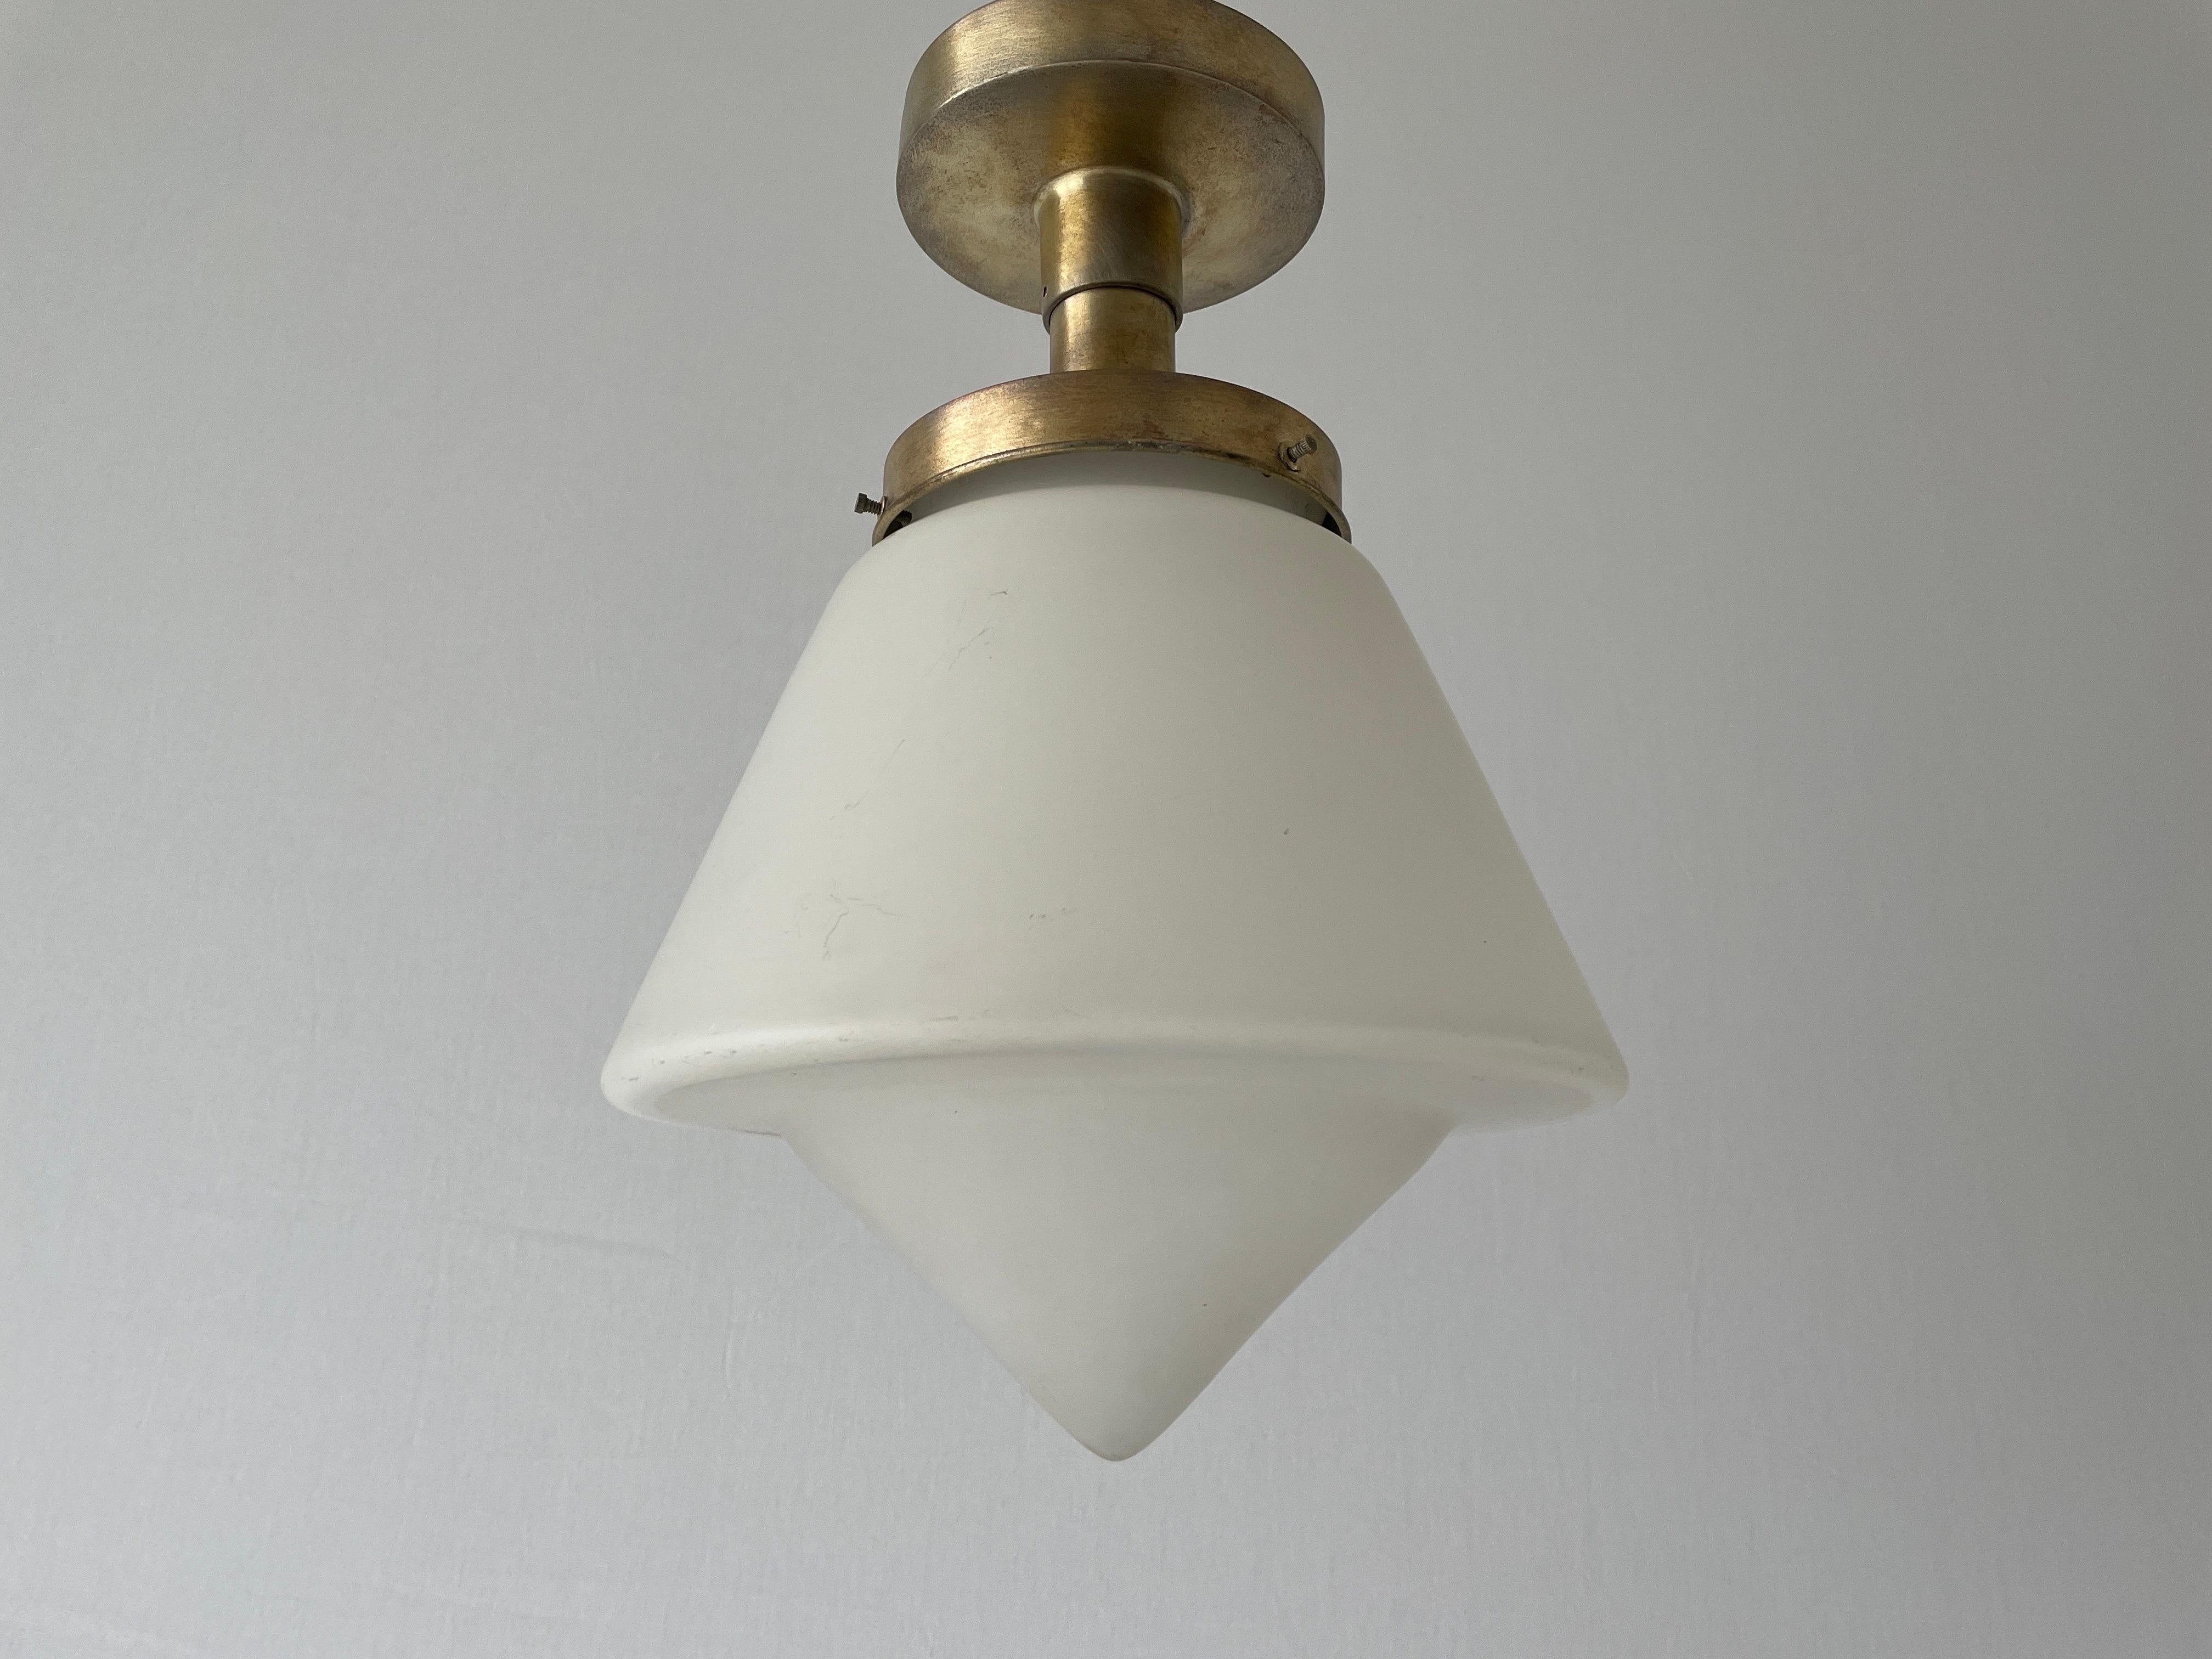 Plafonnier Art Déco, années 1940, Allemagne

Cette lampe fonctionne avec une ampoule E27.

Mesures : 
Hauteur : 35cm
Hauteur et diamètre de l'abat-jour : 22 cm et 24 cm
Base : 12 cm

